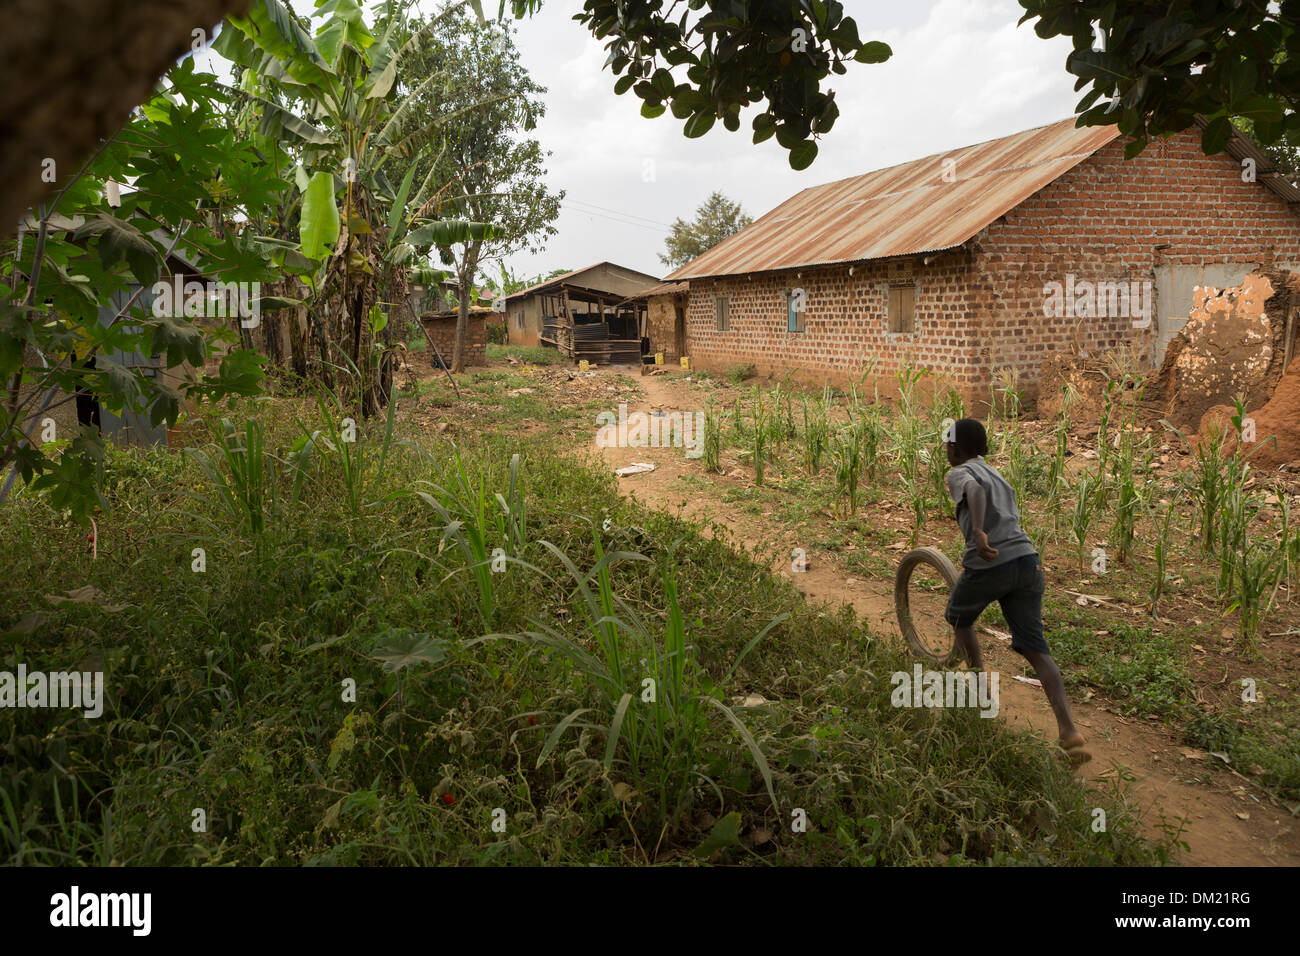 Scène de village rural - Gombe, Ouganda, Afrique de l'Est Banque D'Images